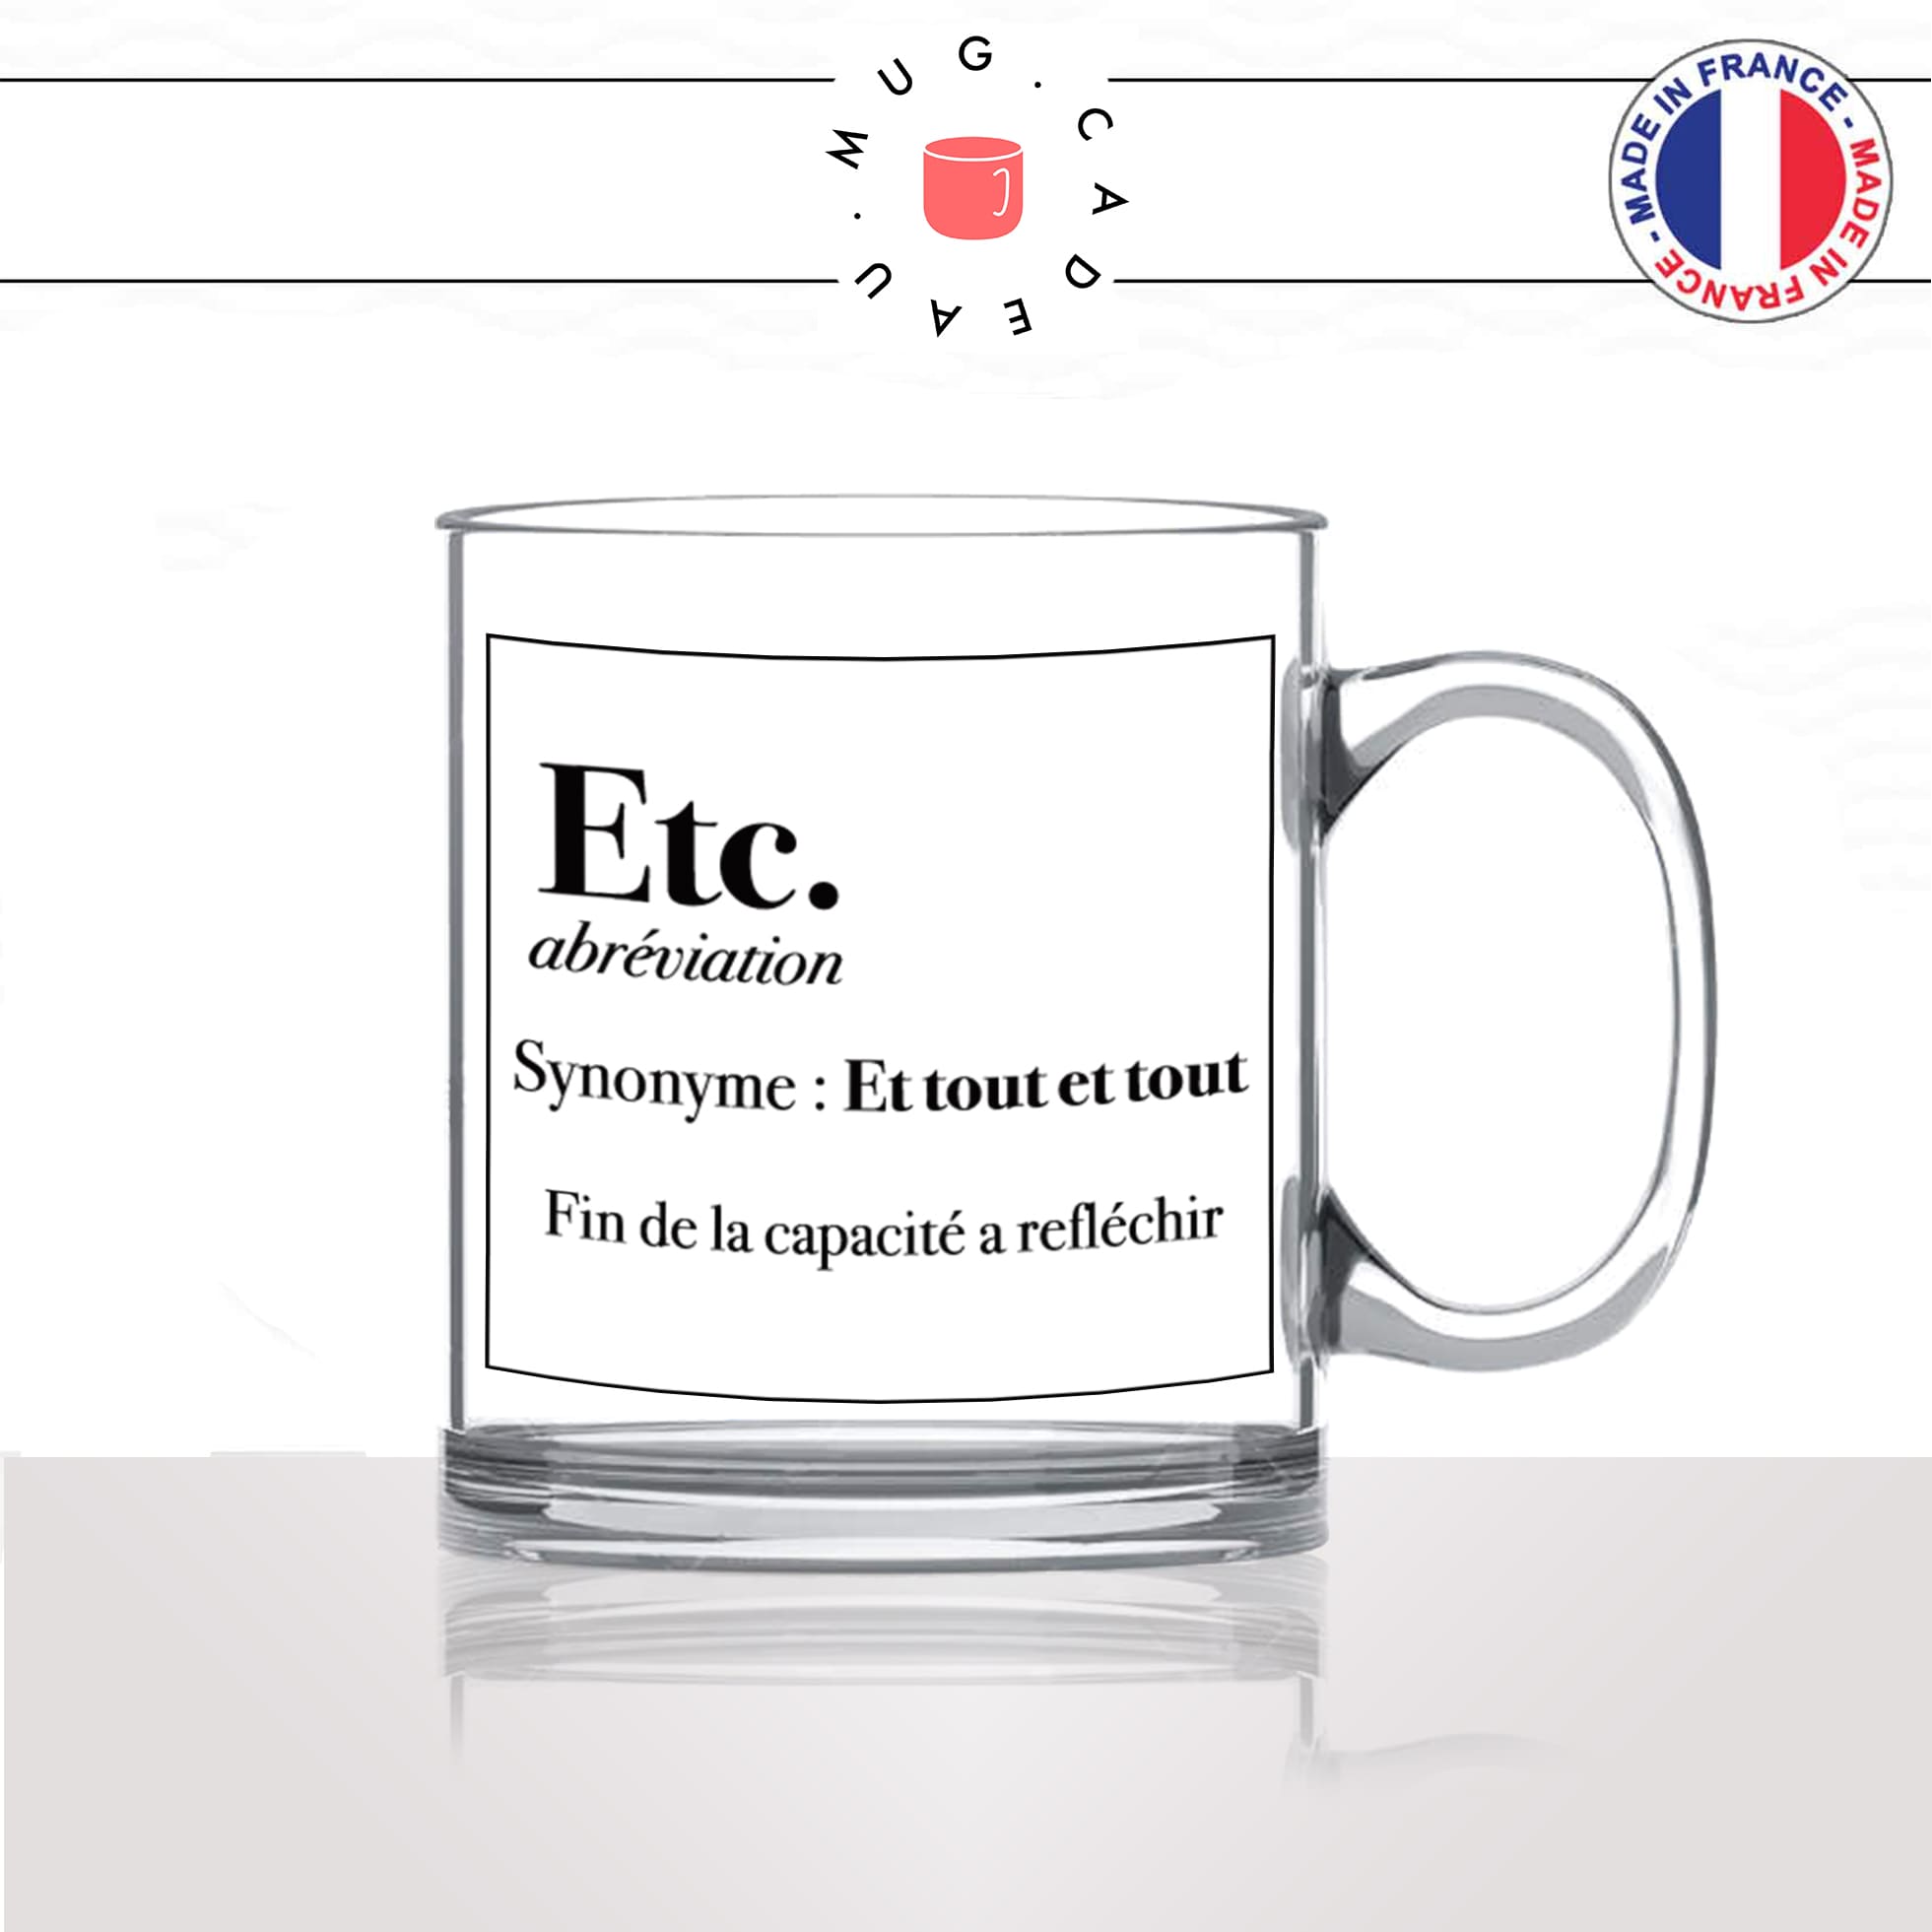 mug-tasse-en-verre-transparent-glass-etc-definition-etcetera-synonymes-et-tout-humour-drole-france-idée-cadeau-fun-cool-café-thé-original2